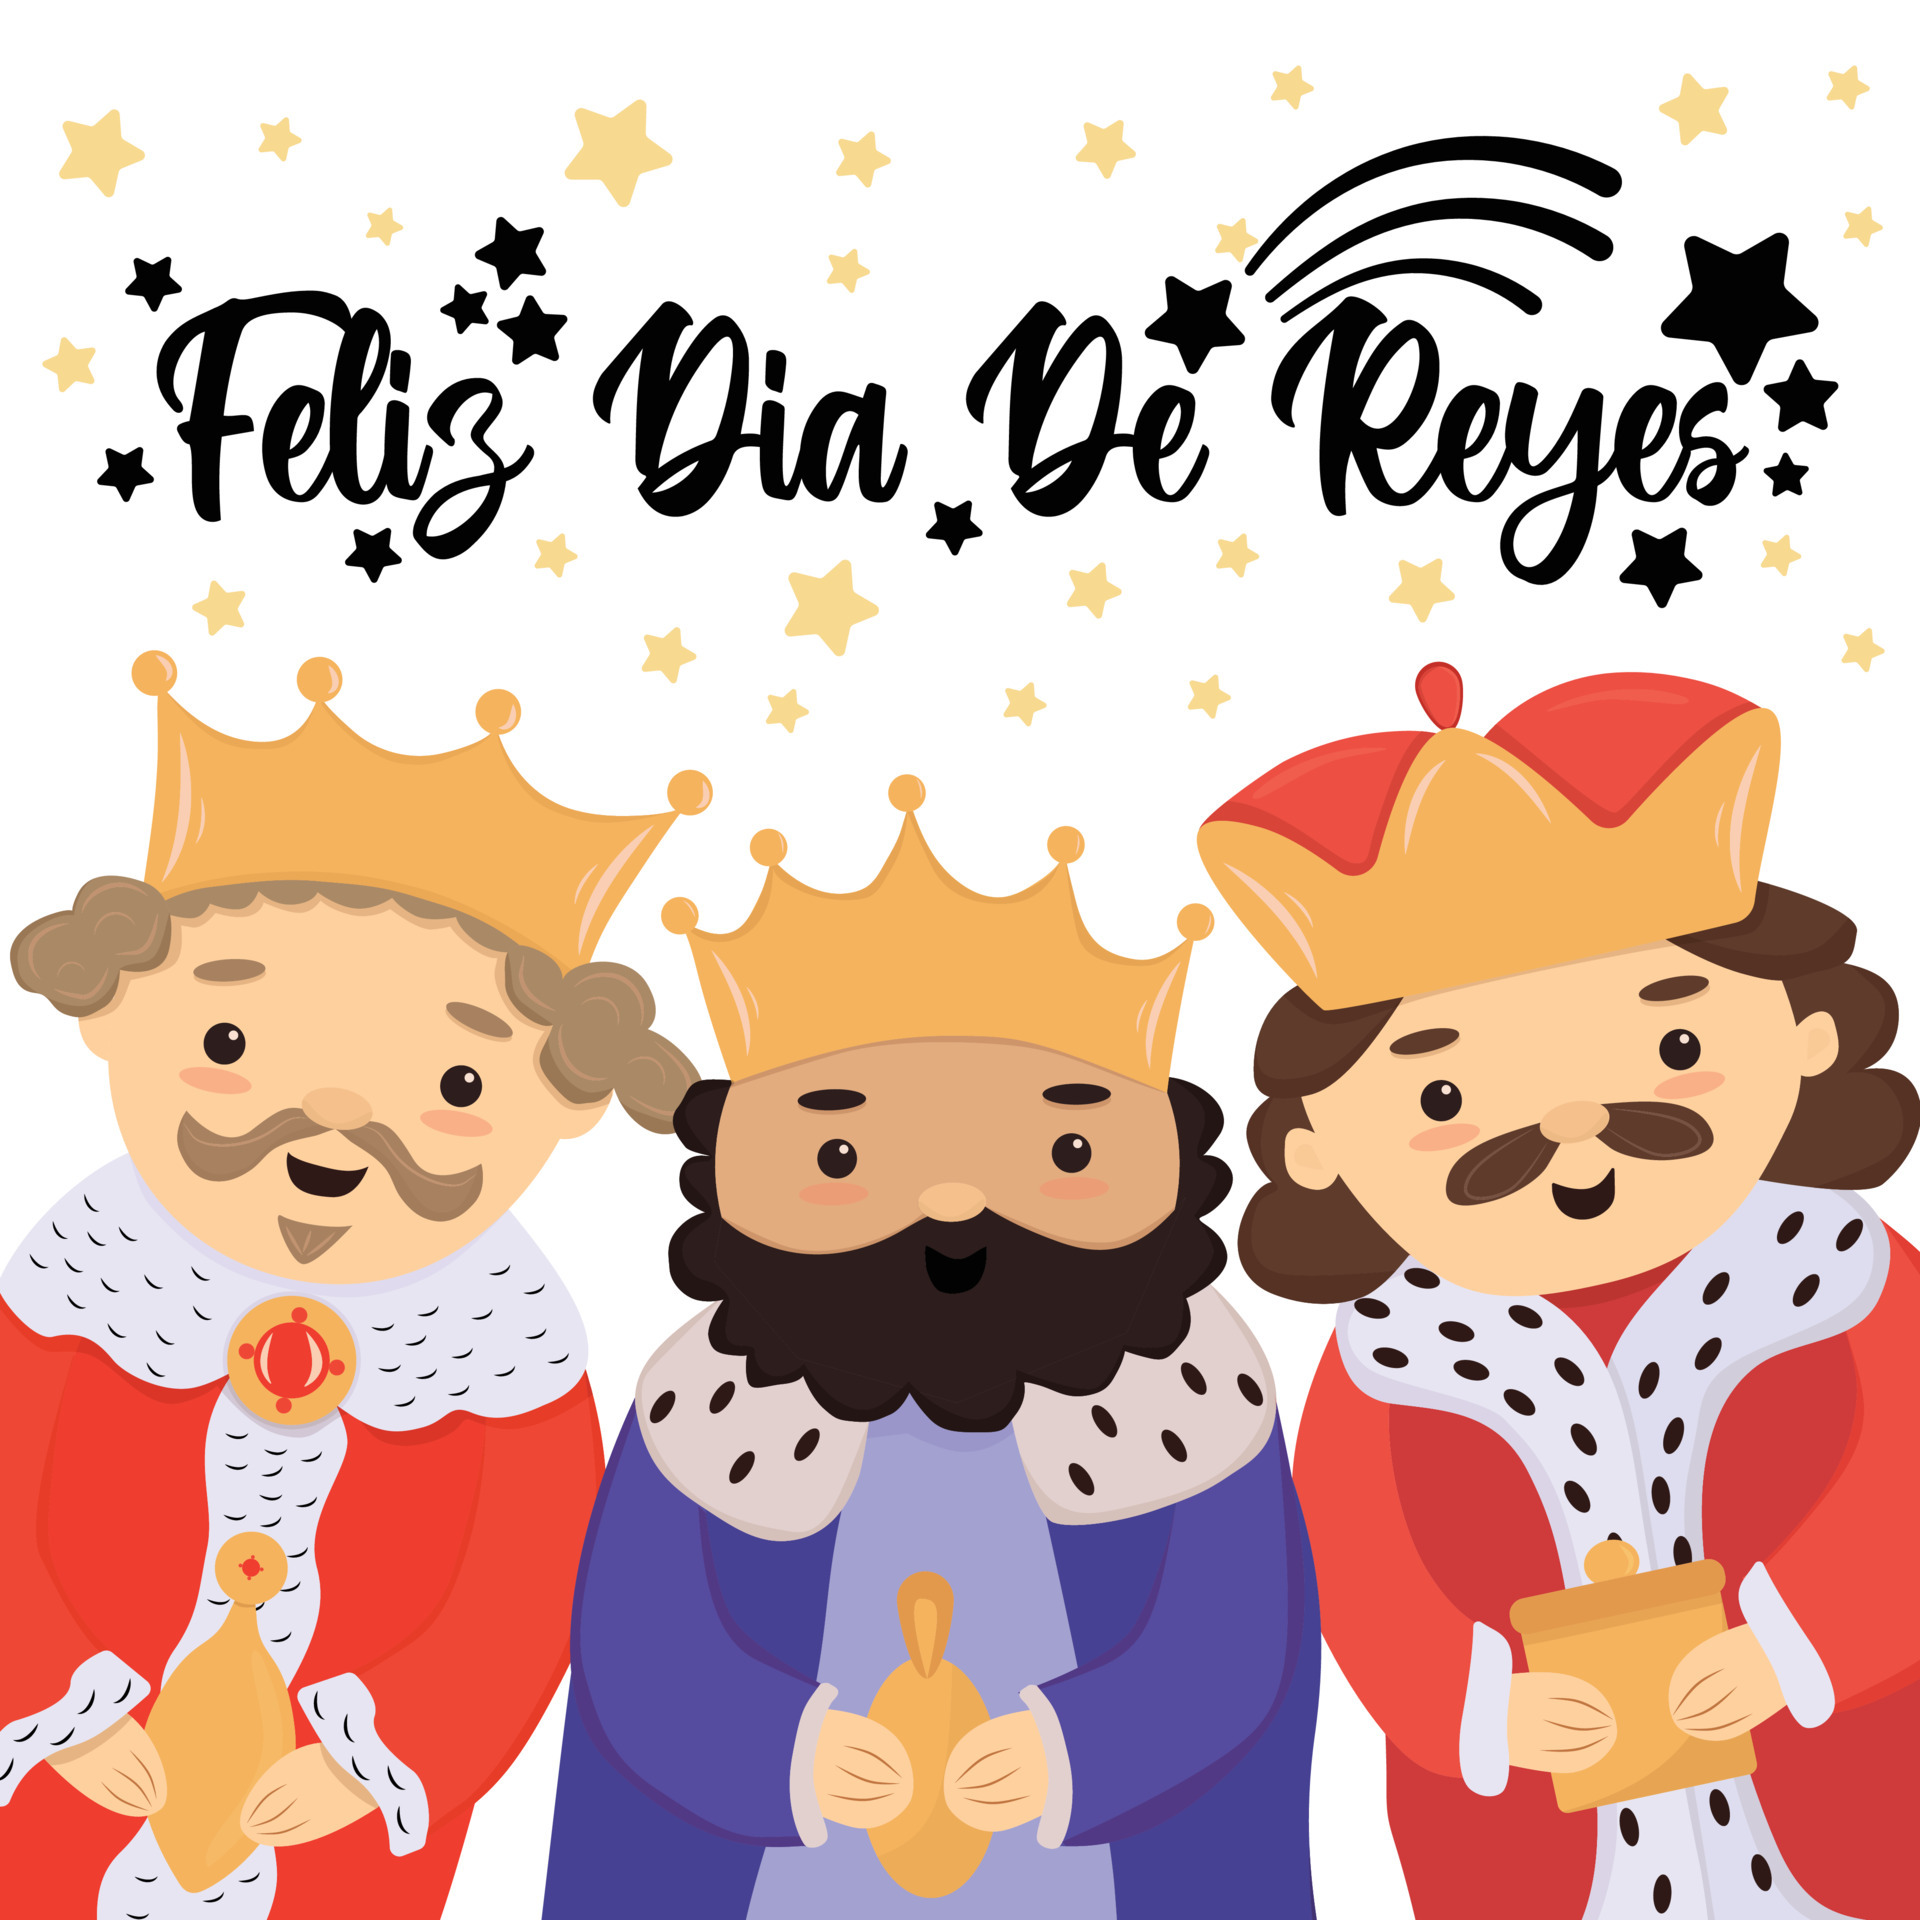 feliz dia de reyes happy day of kings traducción al español. linda